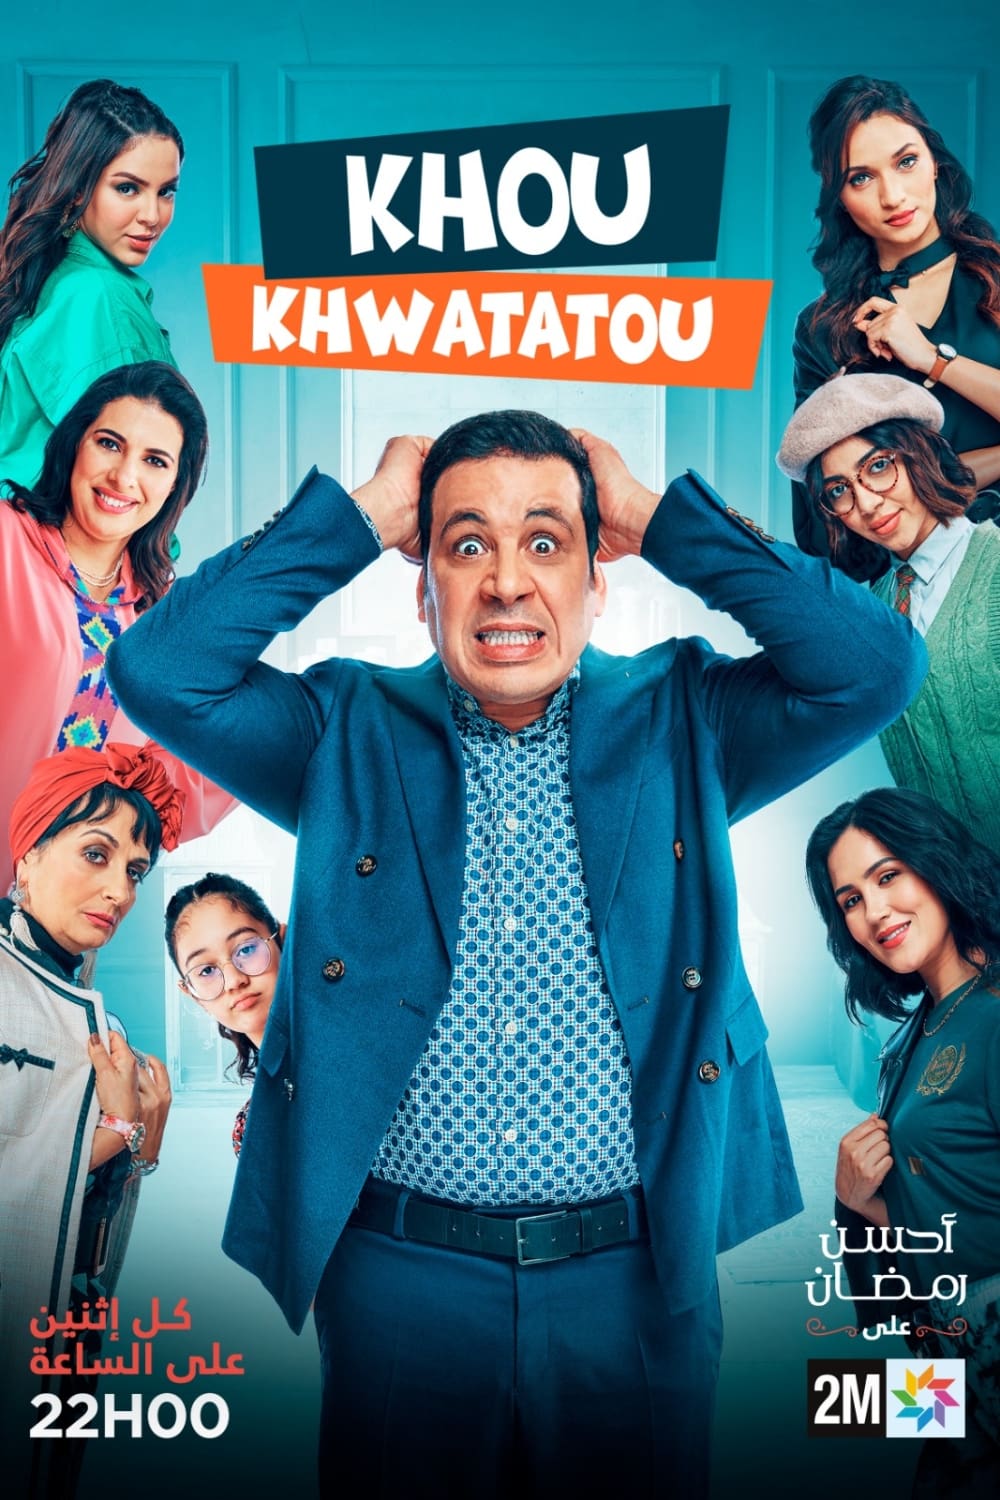 TV ratings for Khou Khwatatou (خو خواتاتو) in Canada. 2M TV series